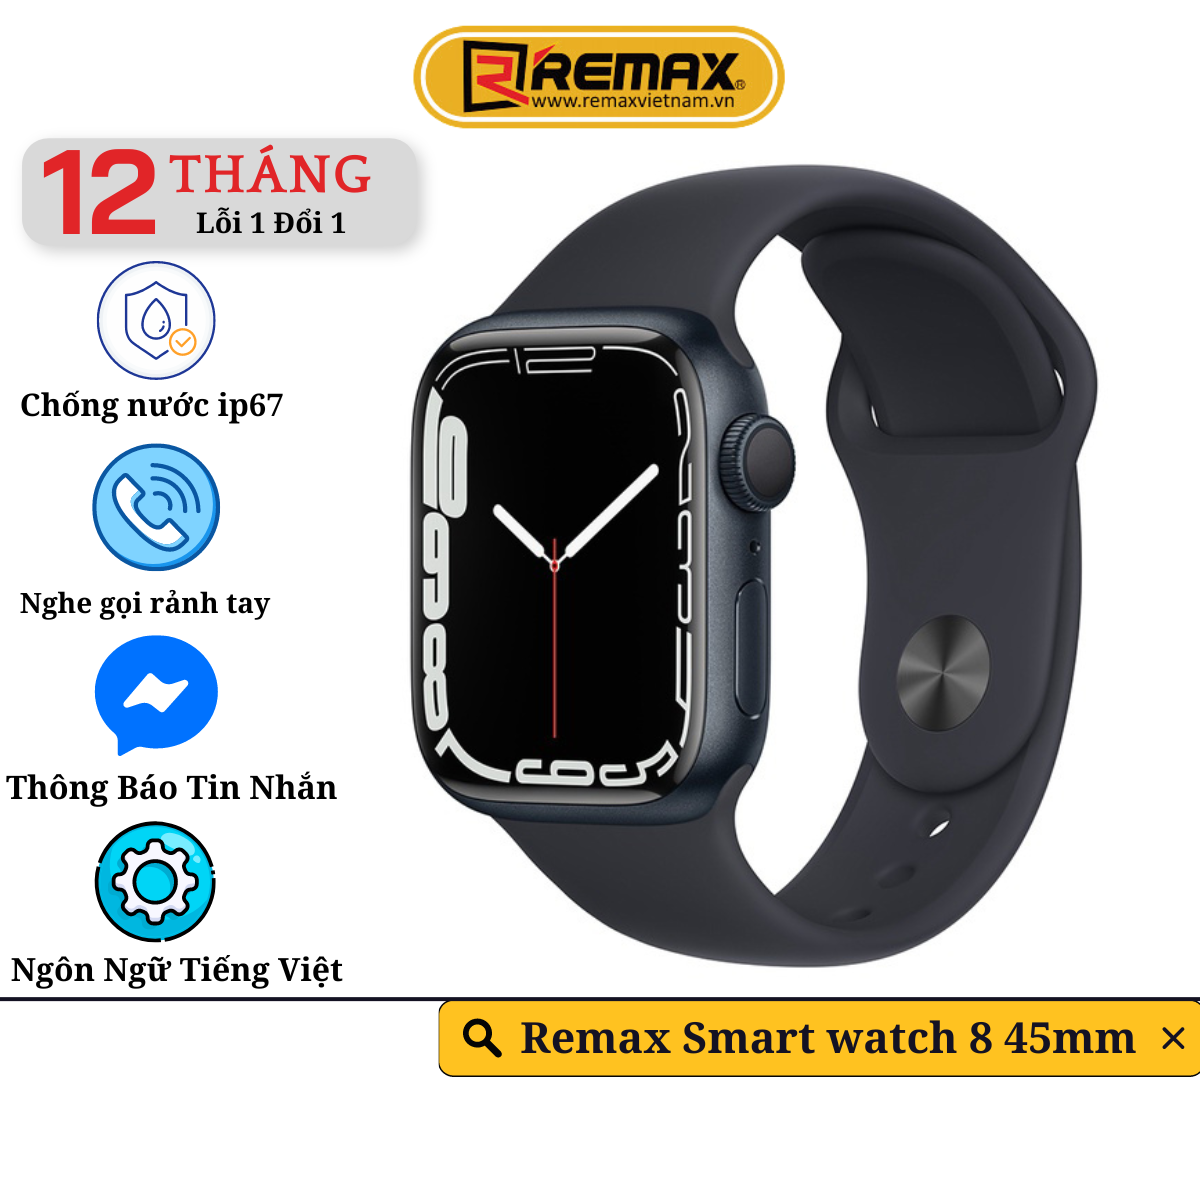 Đồng Hồ Thông Minh Remax Smart Watch 8 45mm - Đầy Đủ Tính Năng Theo Dõi Sức Khỏe, Thể Dục, Nghe Gọi - Hàng Chính Hãng Remax Bảo Hành 12 Tháng  1 Đổi 1